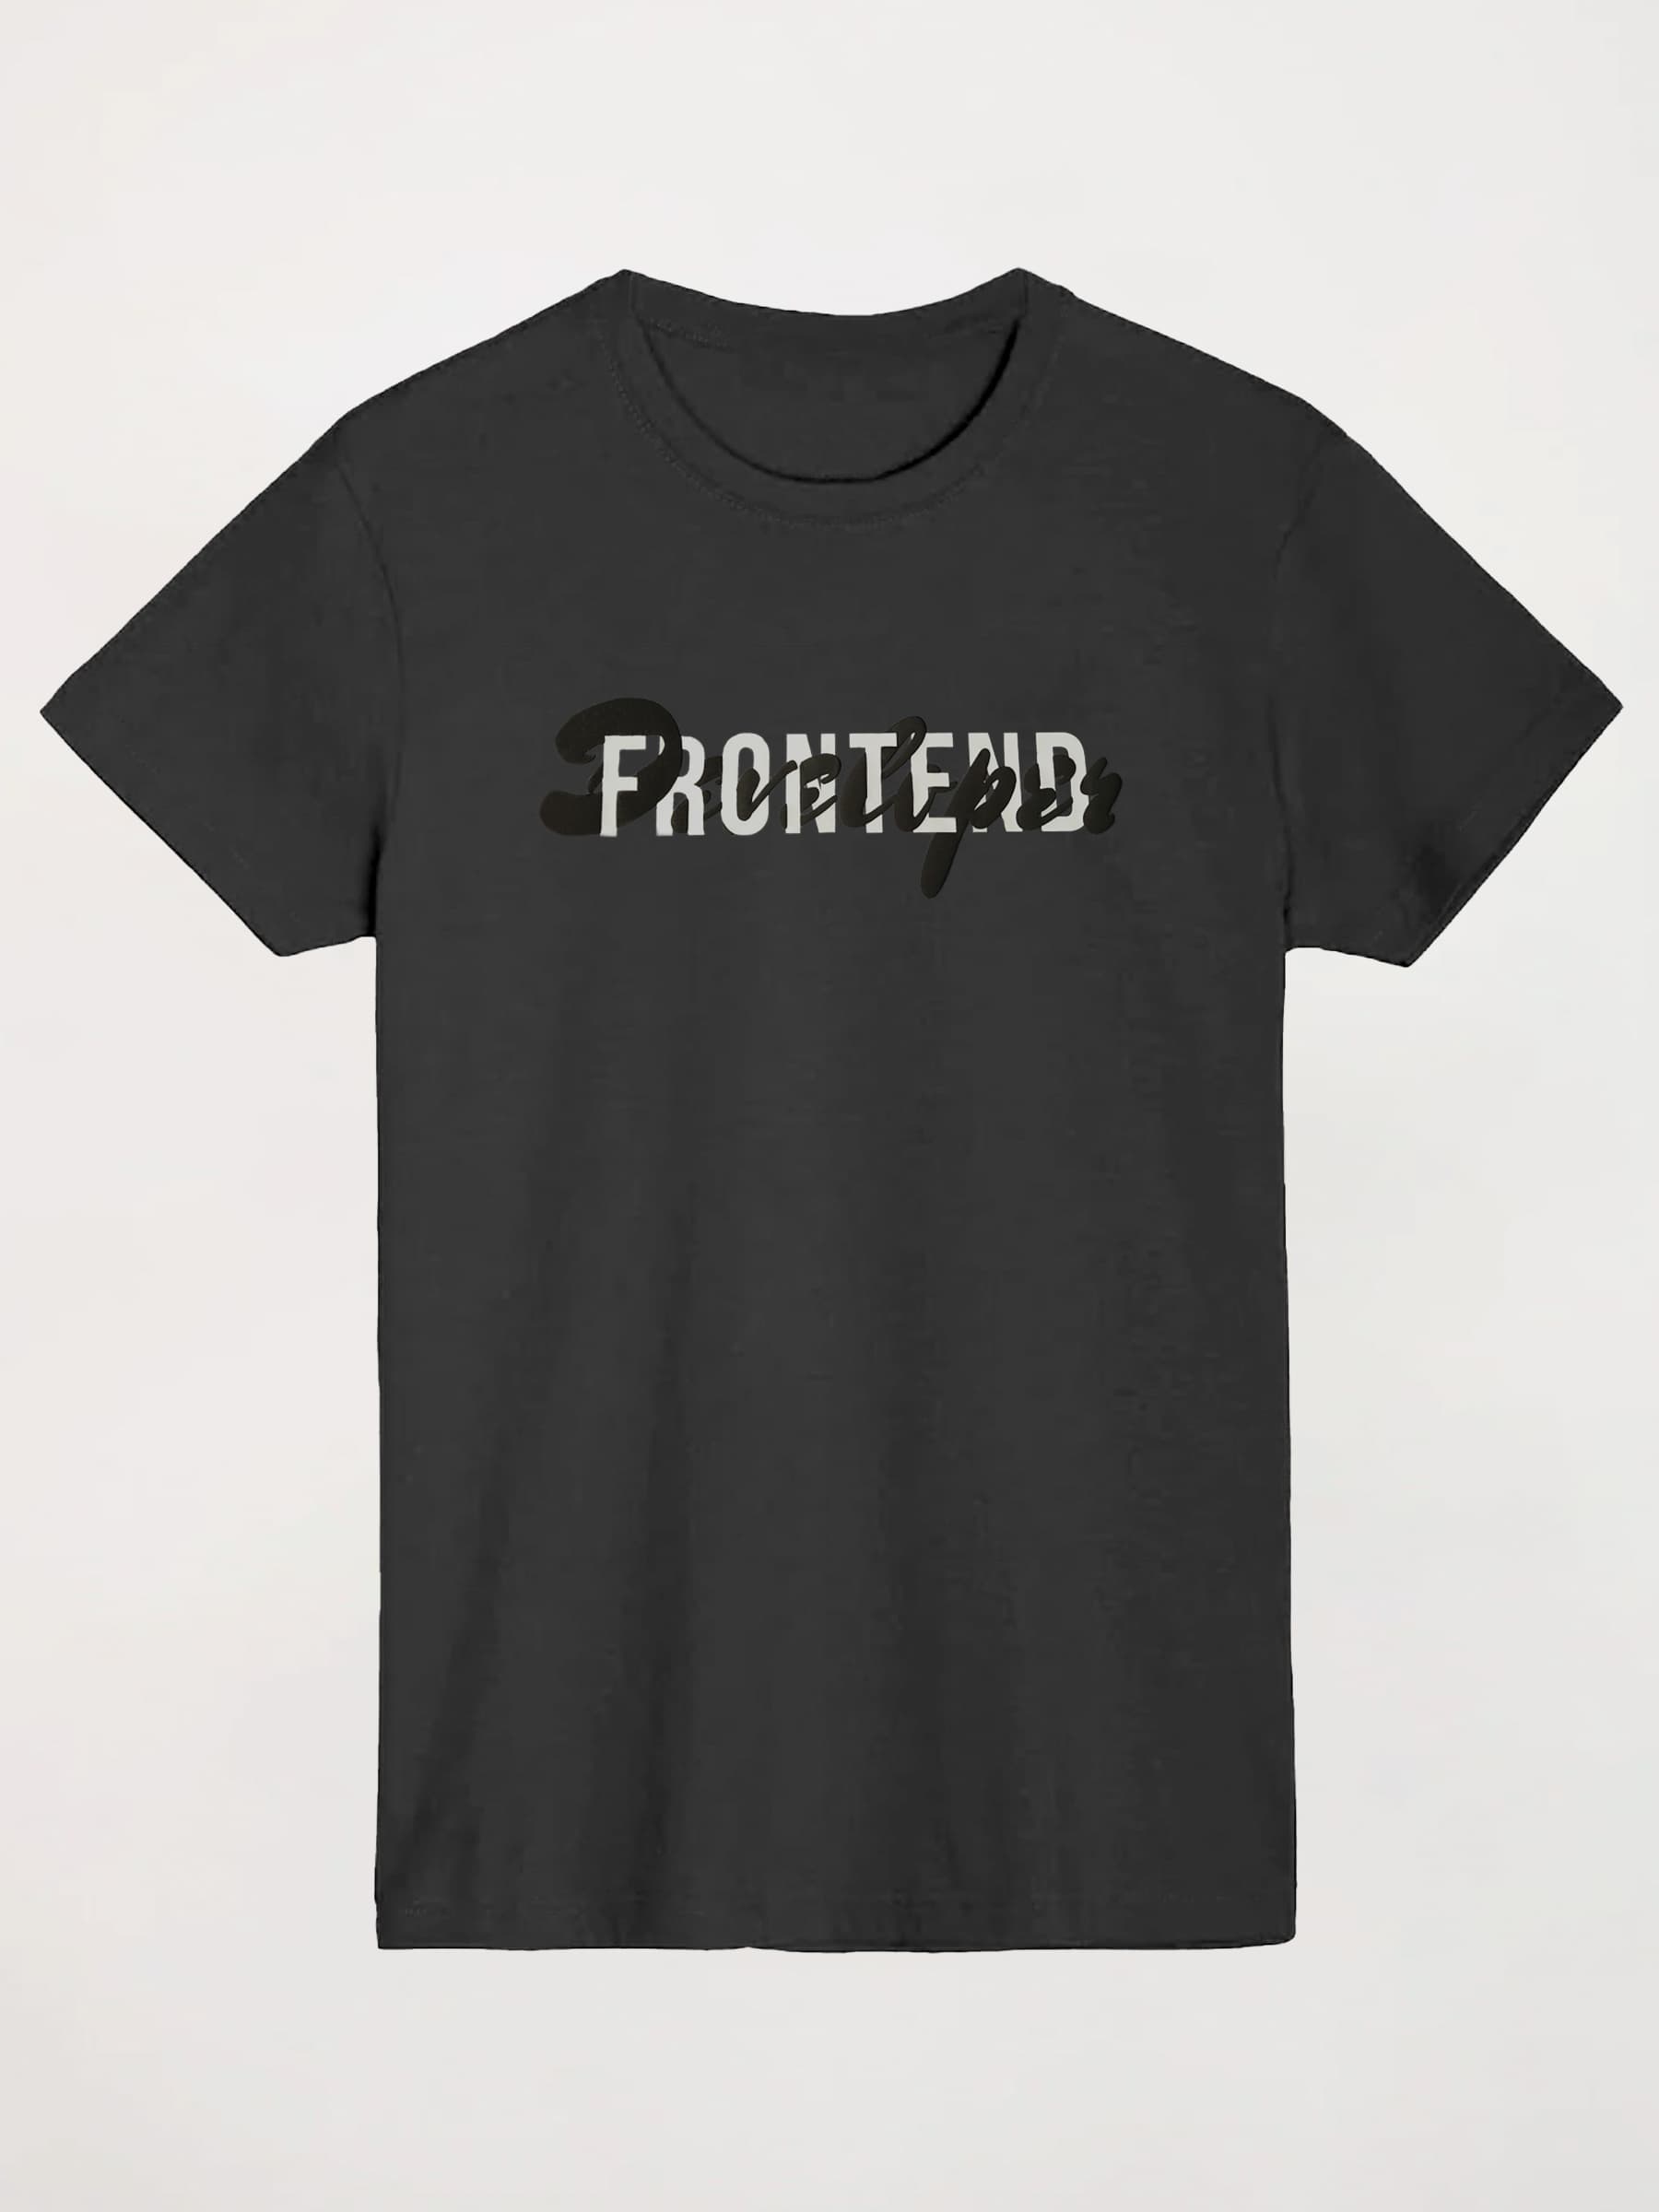 T-shirt Frontend